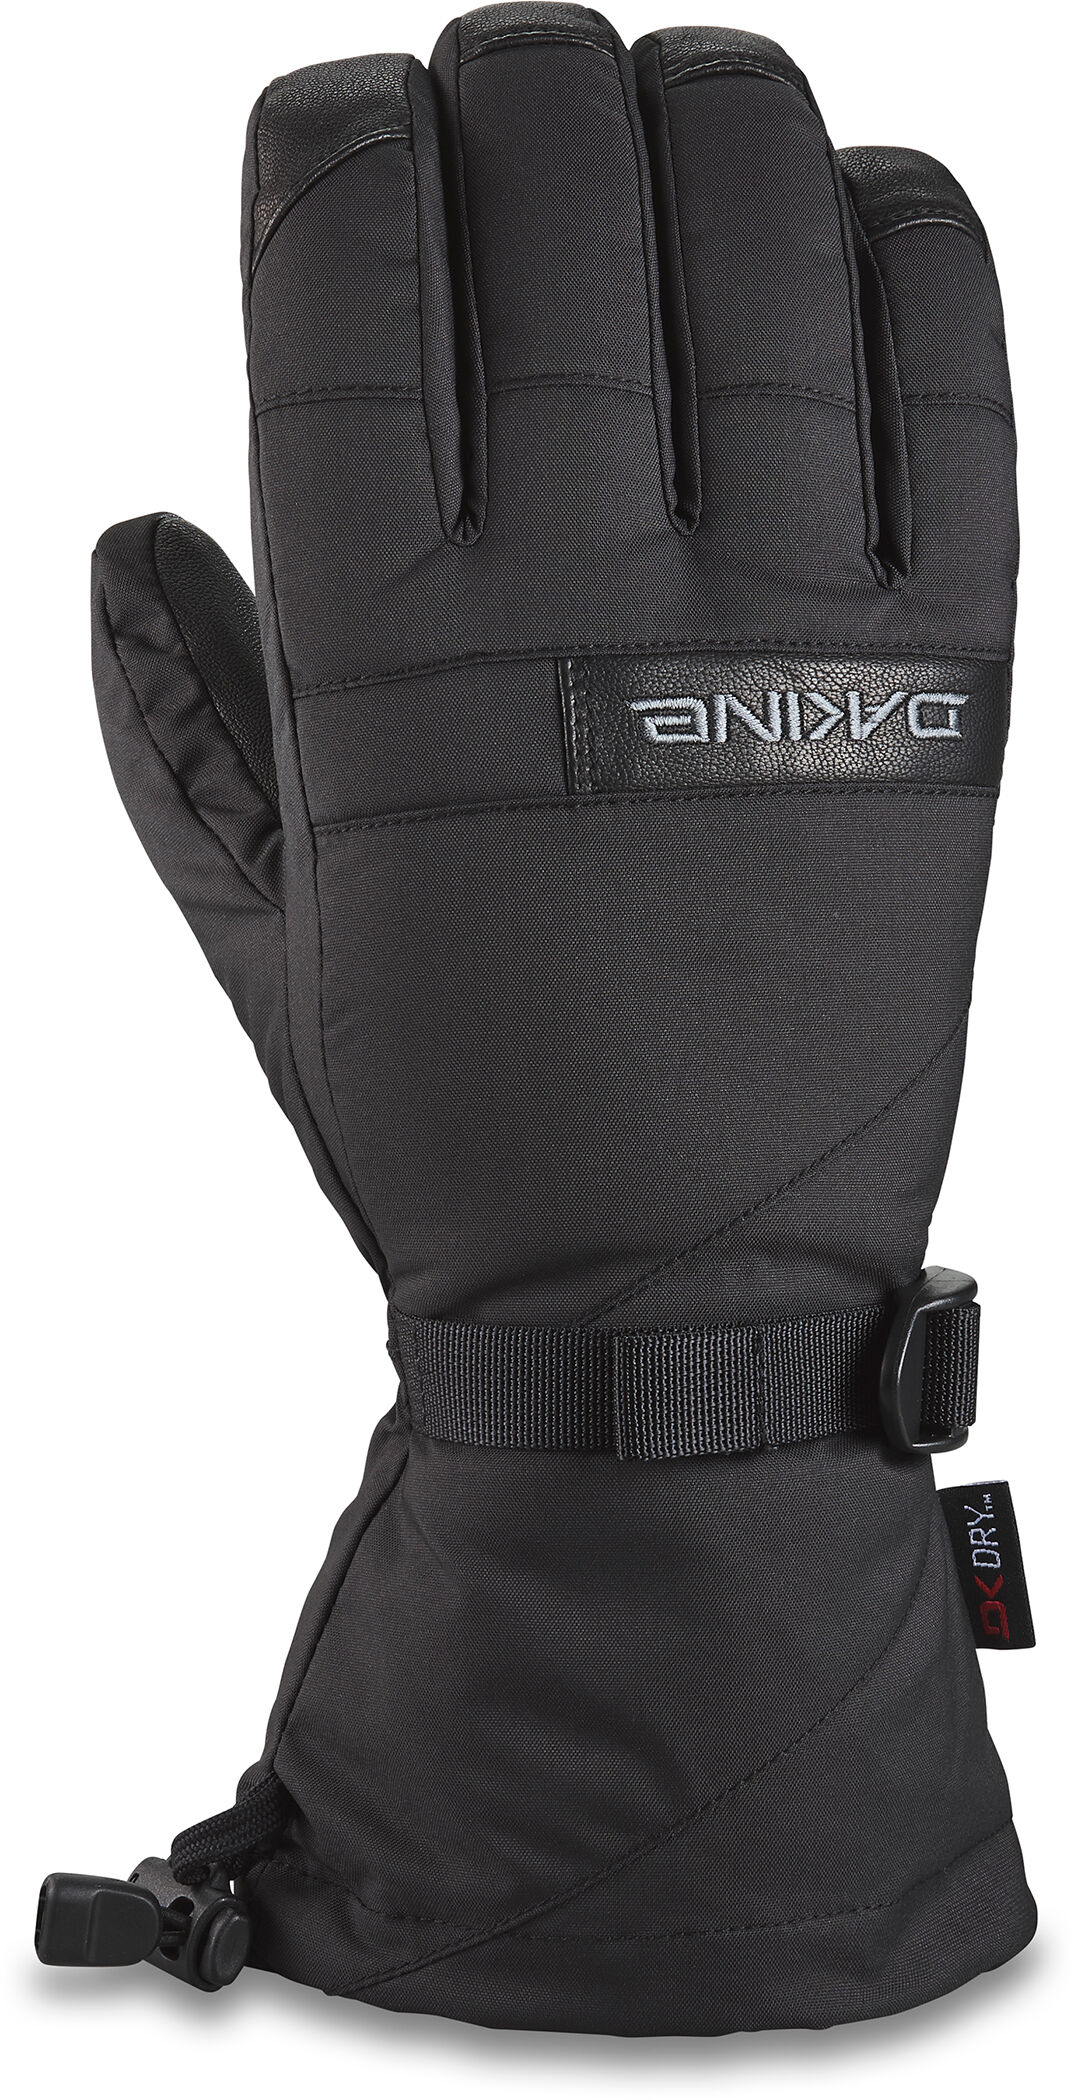 Dakine Nova Glove - Ski gloves - Men's